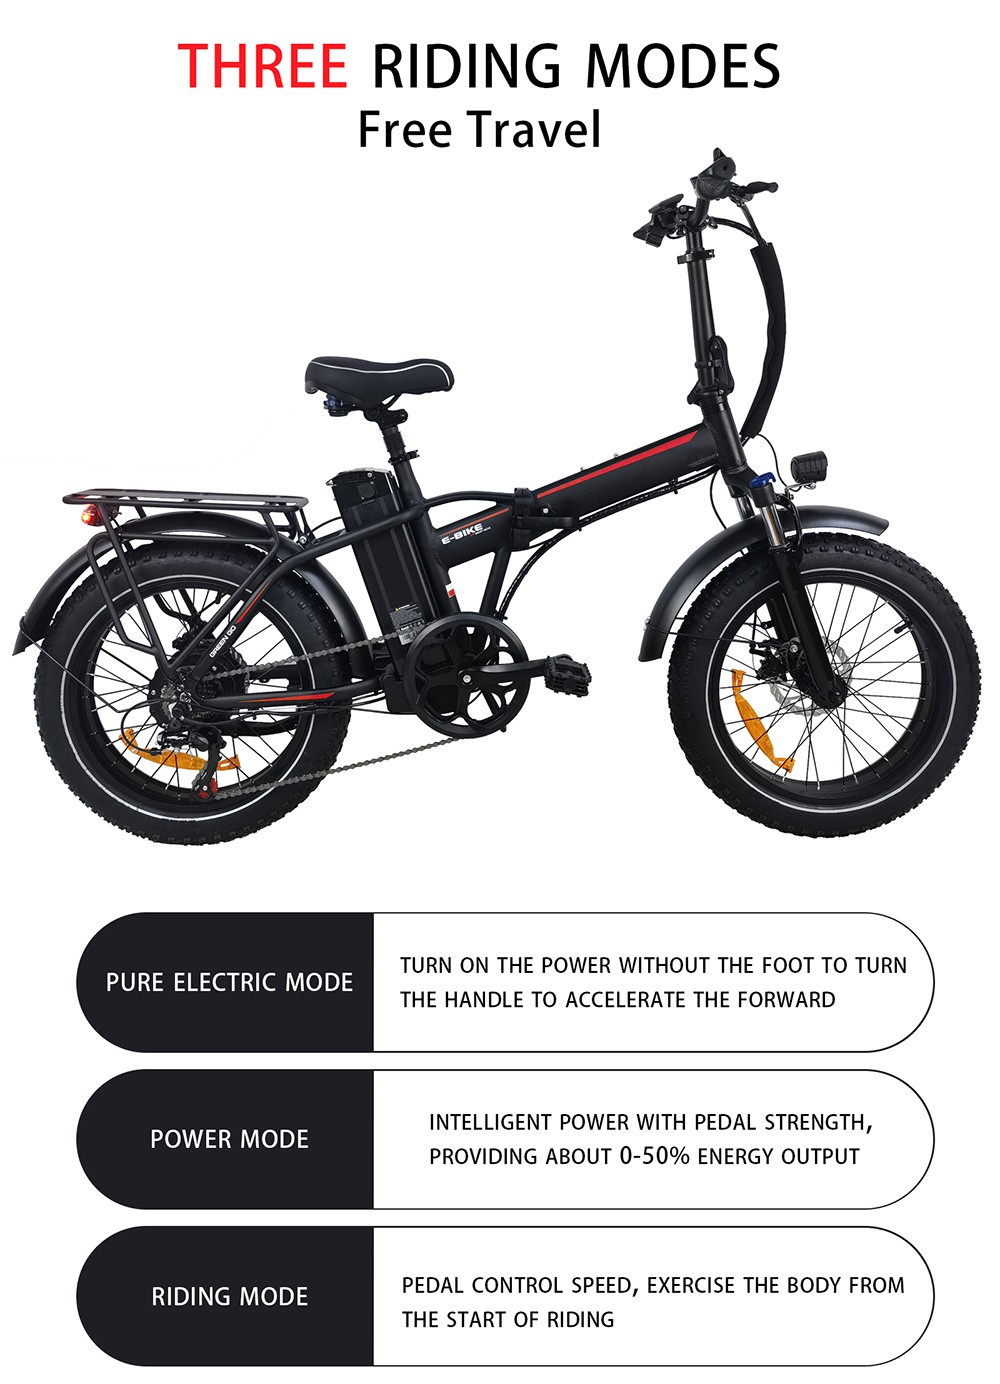 BAOLUJIE DZ2031 elektrische fiets, 500 W motor 48 V 13 Ah batterij 20 * 4.0 inch band 35-45 km bereik 40 km / u maximale snelheid SHIMANO mechanische schijfrem met 7 versnellingen - grijs